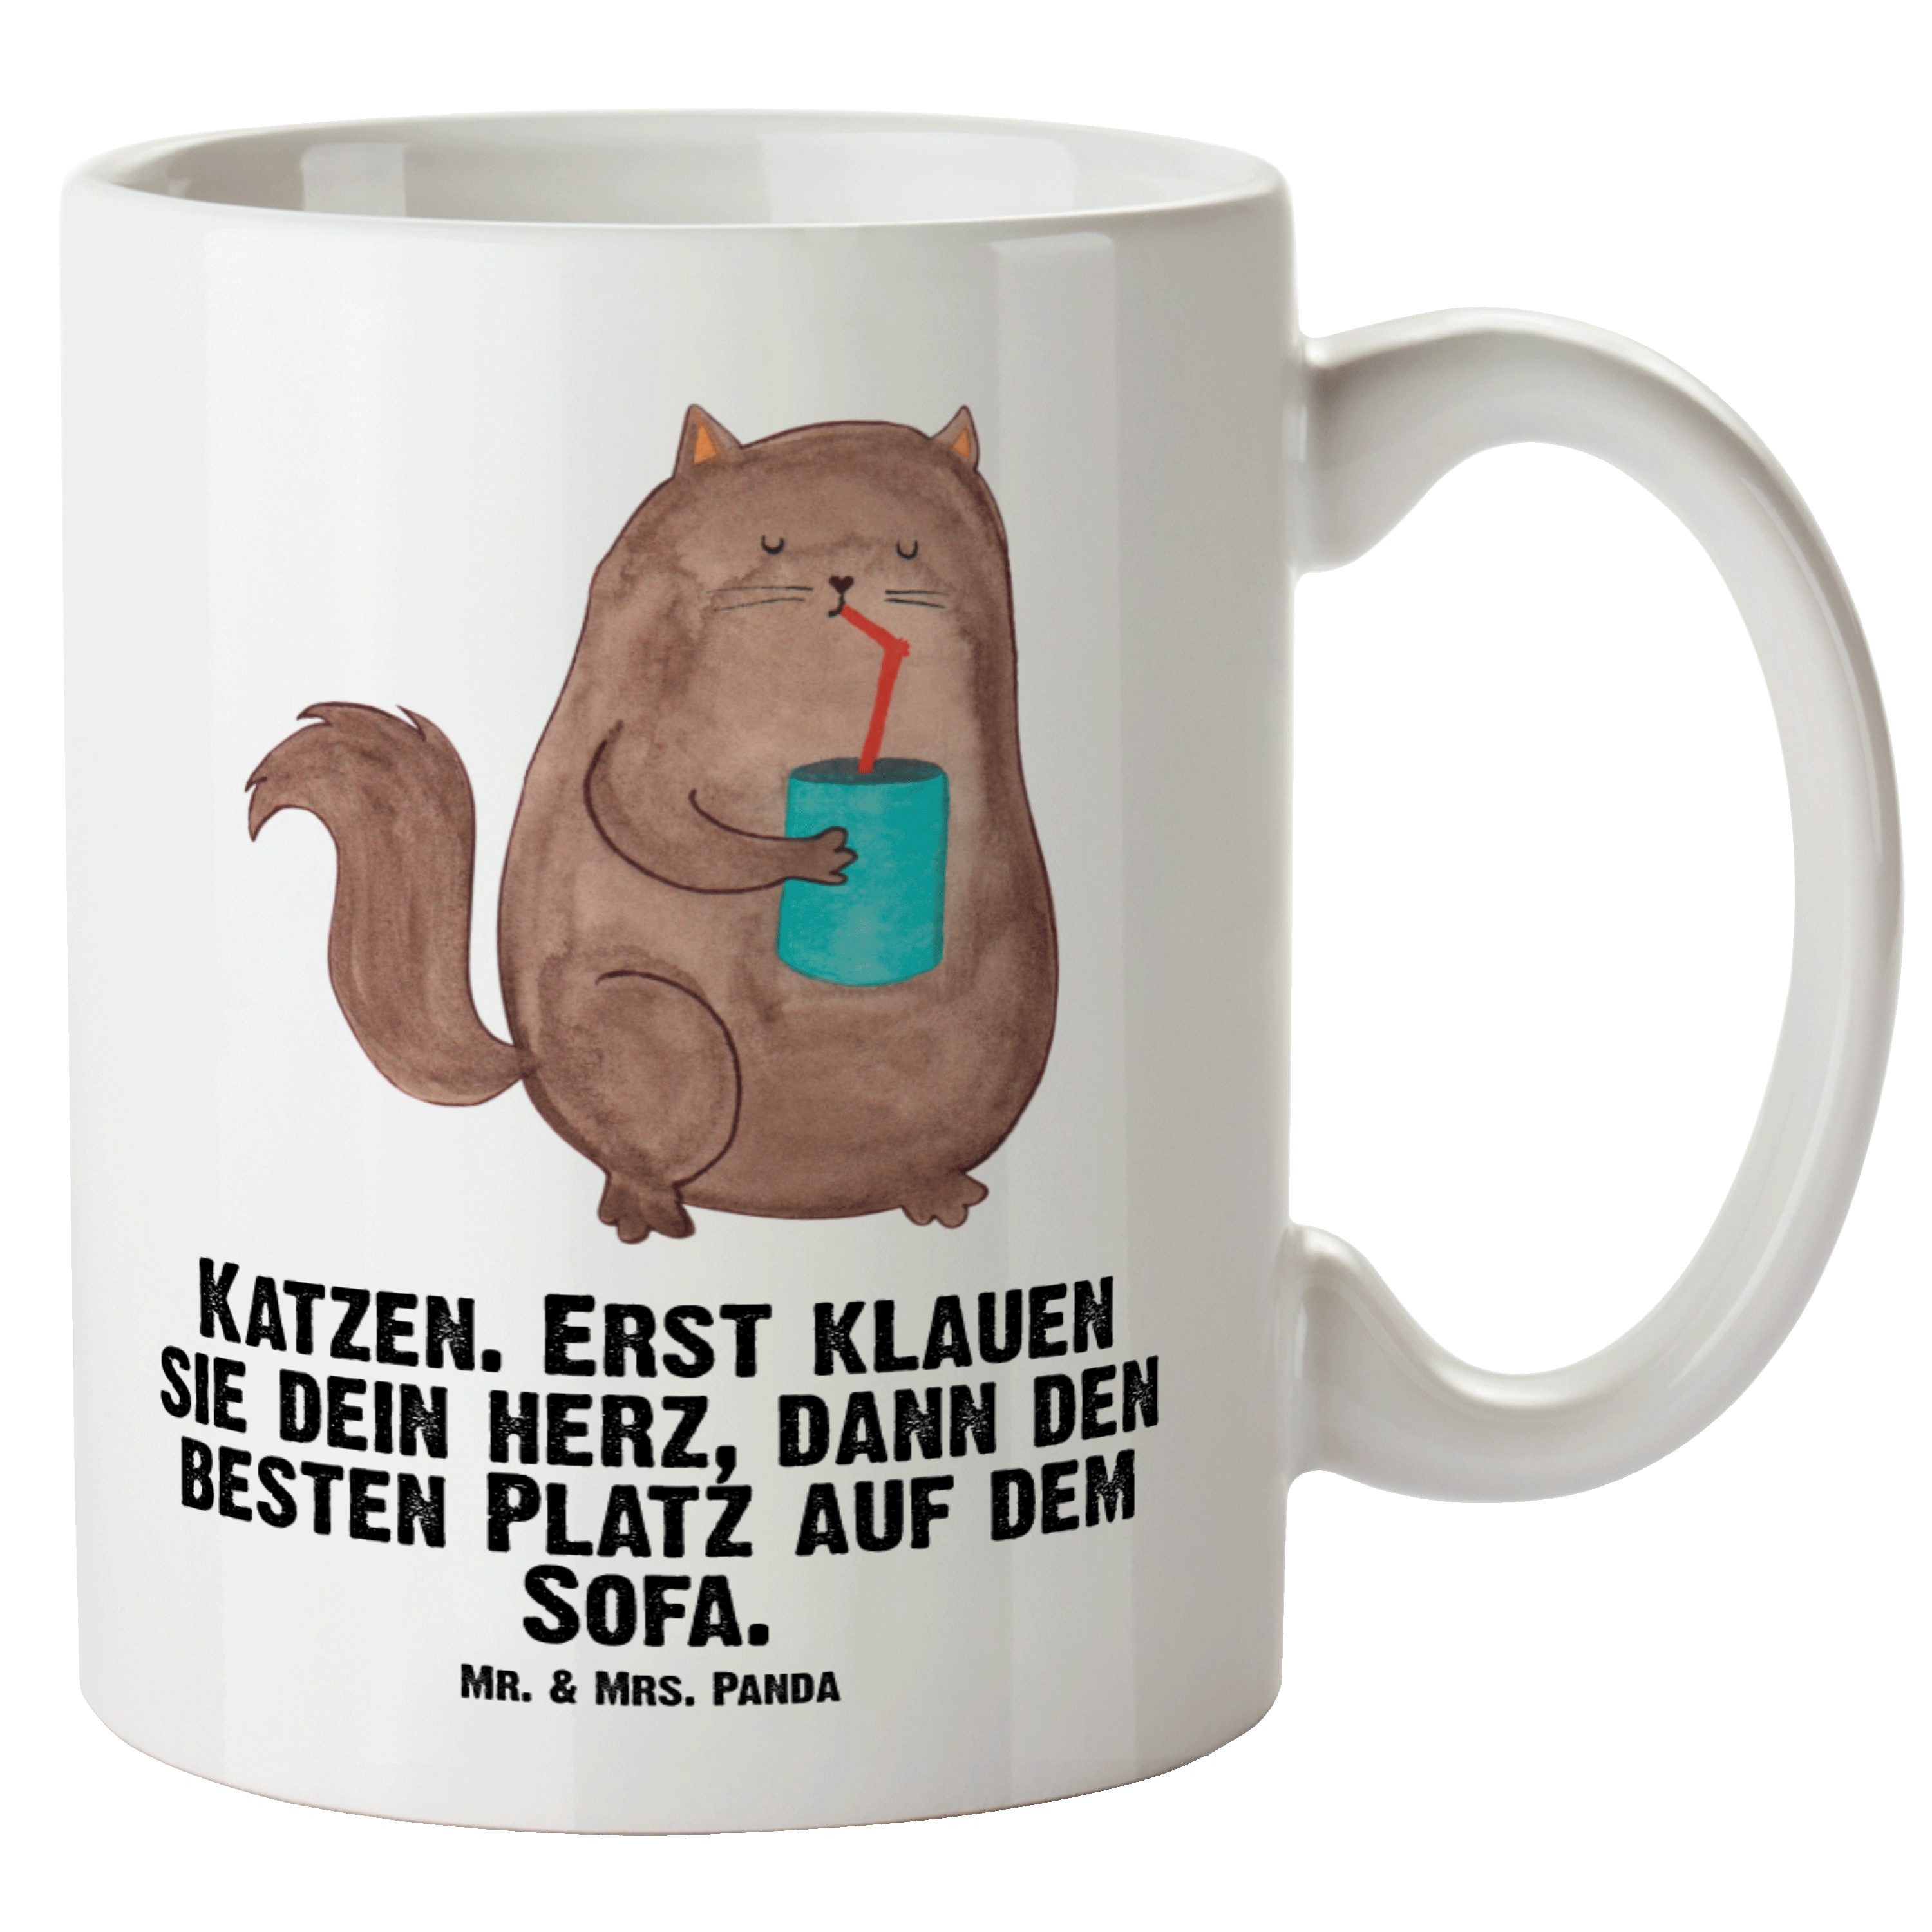 Katzenliebhaberprodukte, Panda spülmaschinenf, Tasse Keramik & - Mr. Weiß XL Dose Katze Tasse - Mrs. Geschenk,